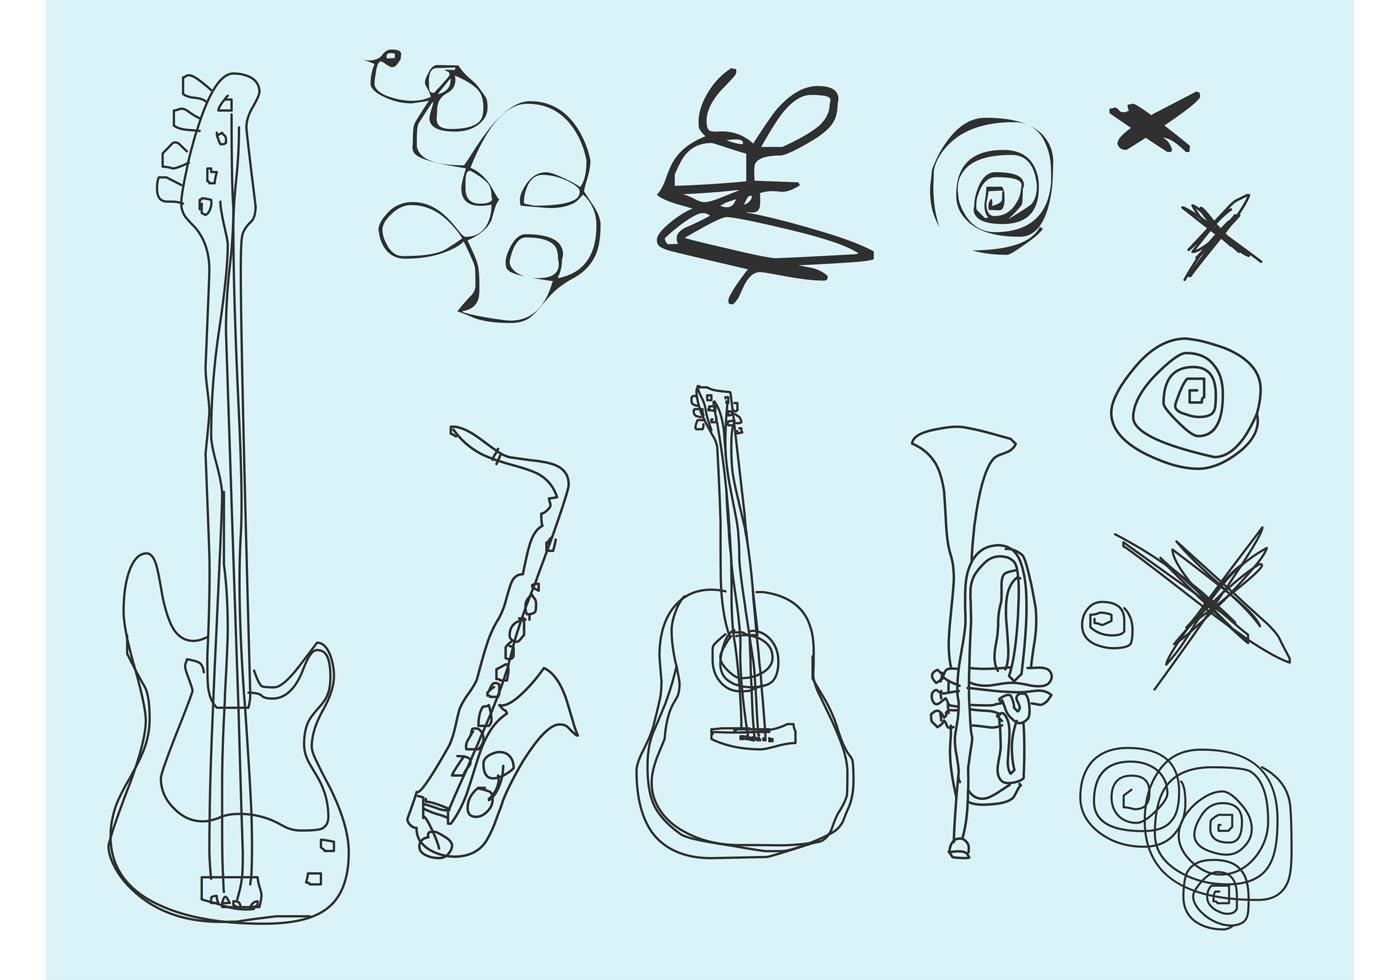 Зарисовки музыкальных инструментов